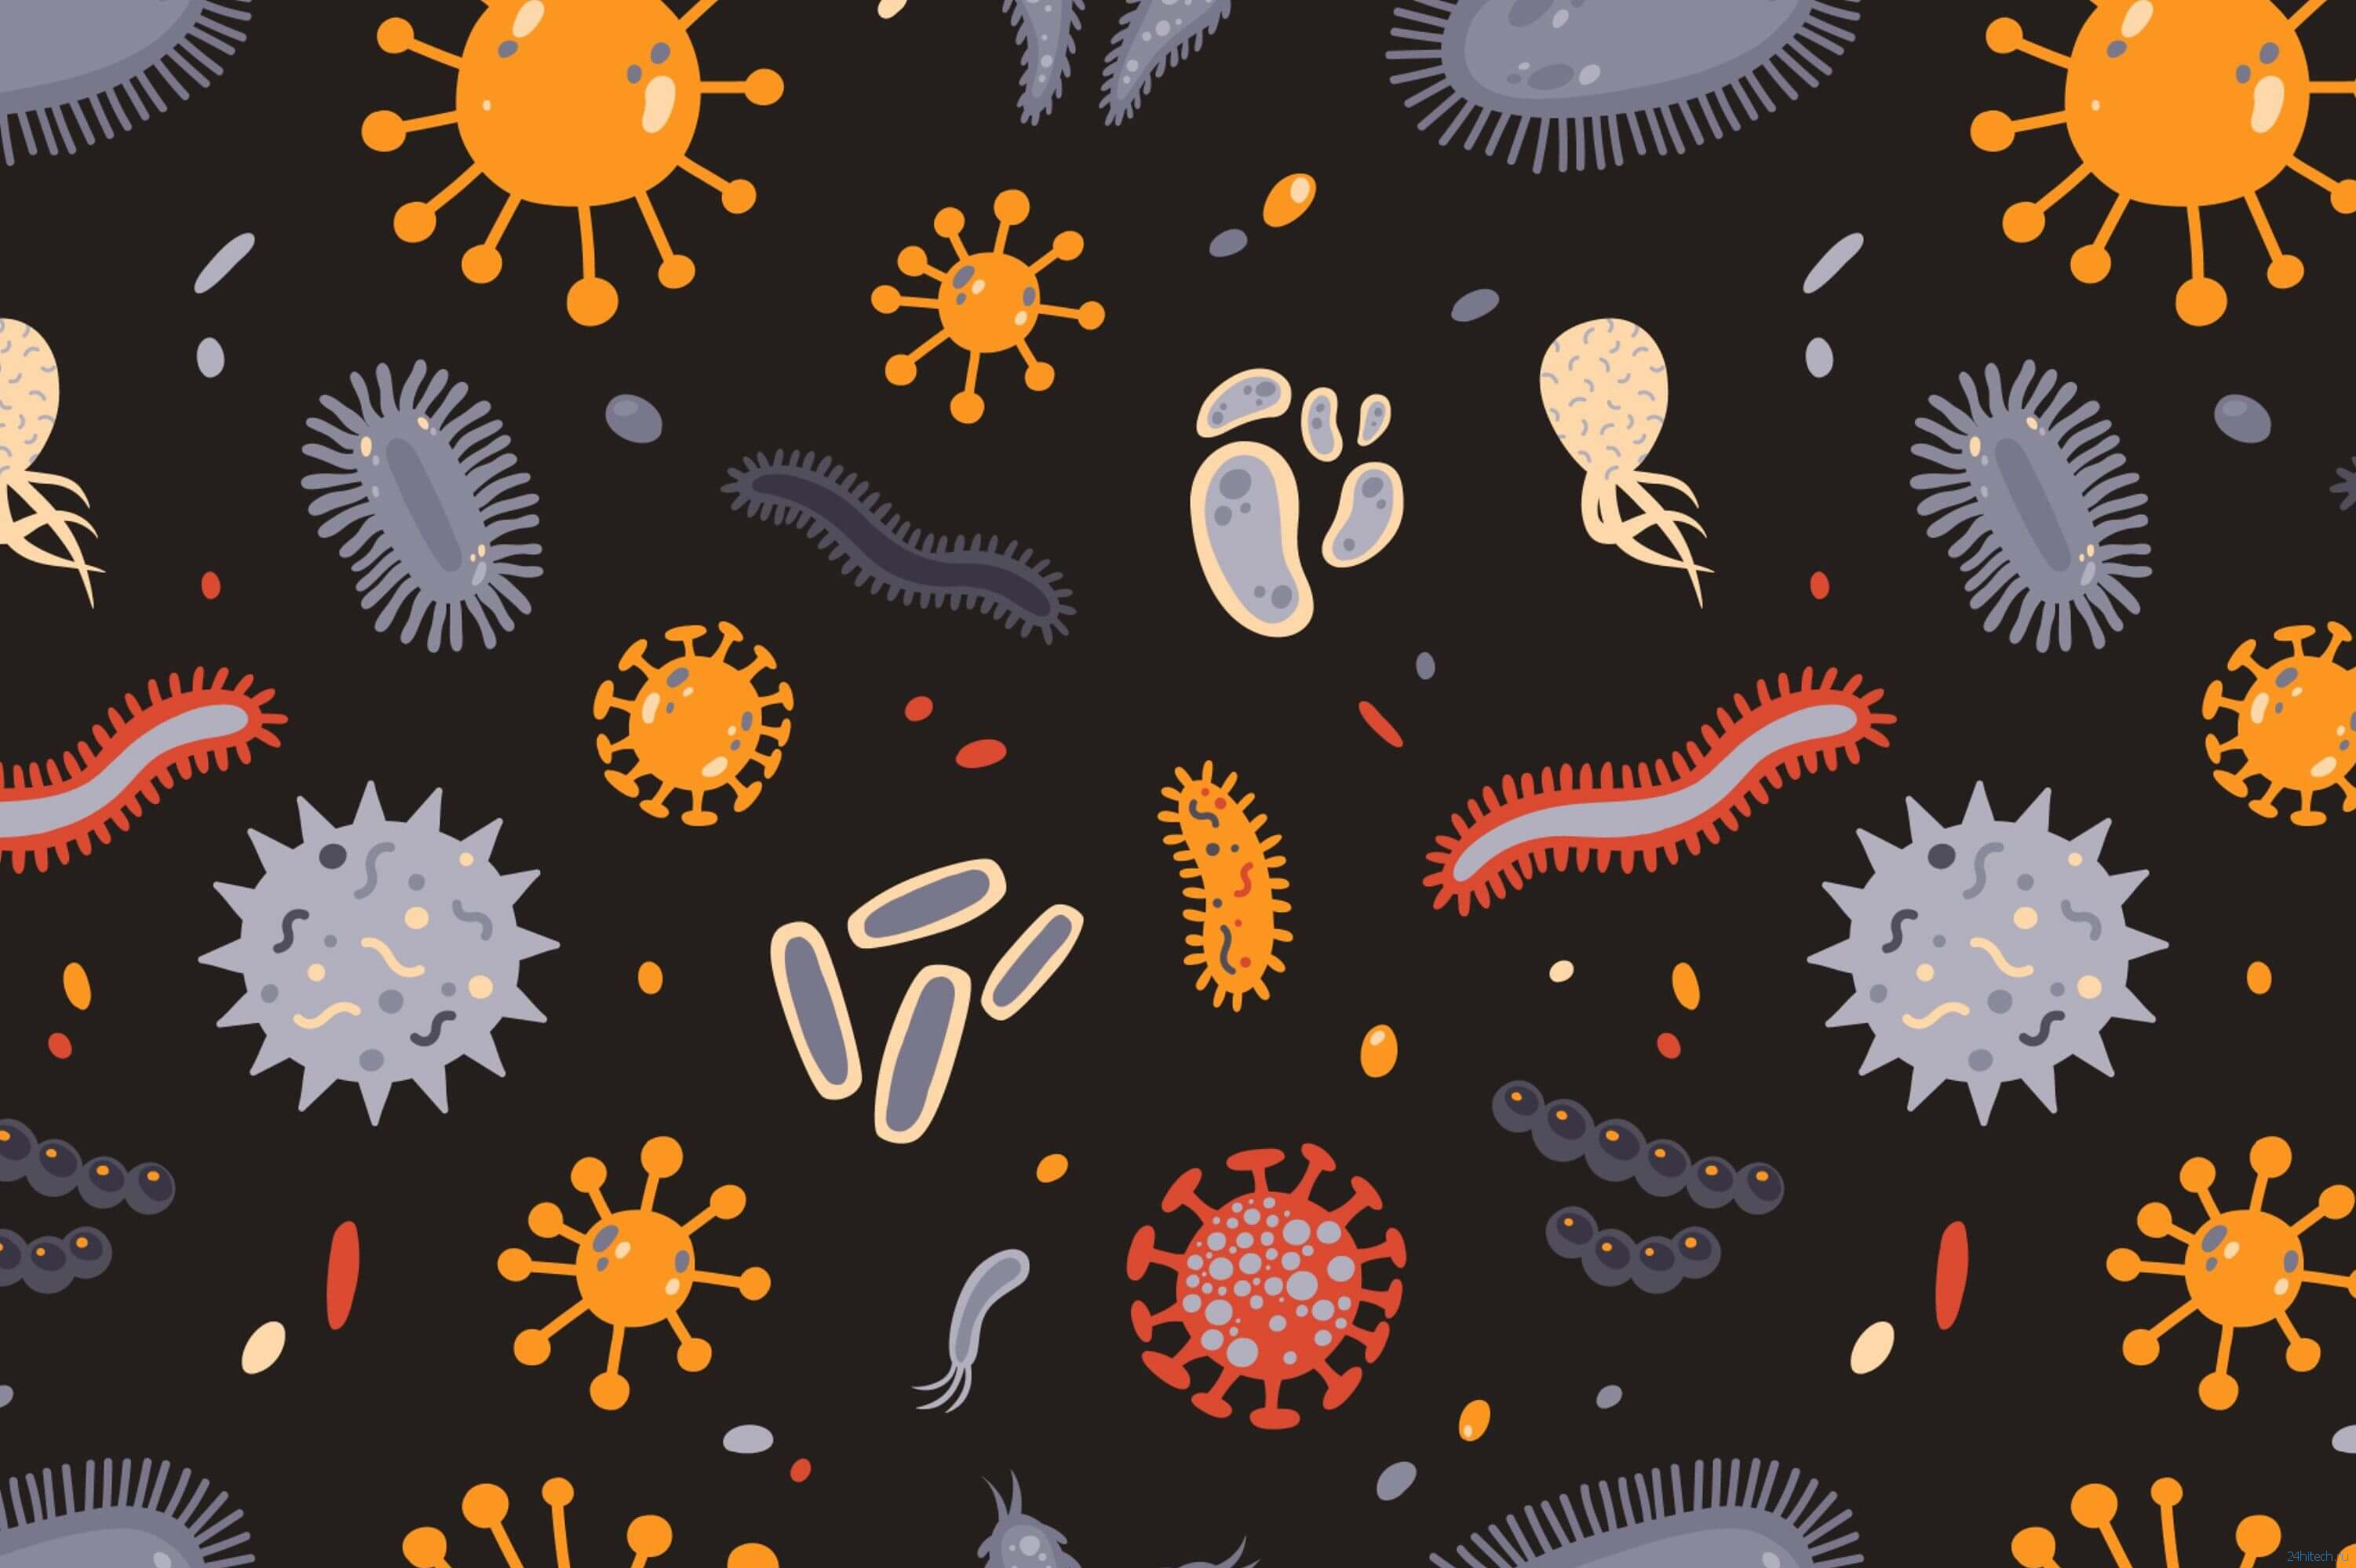 Чем отличаются бактерии, микробы и вирусы?